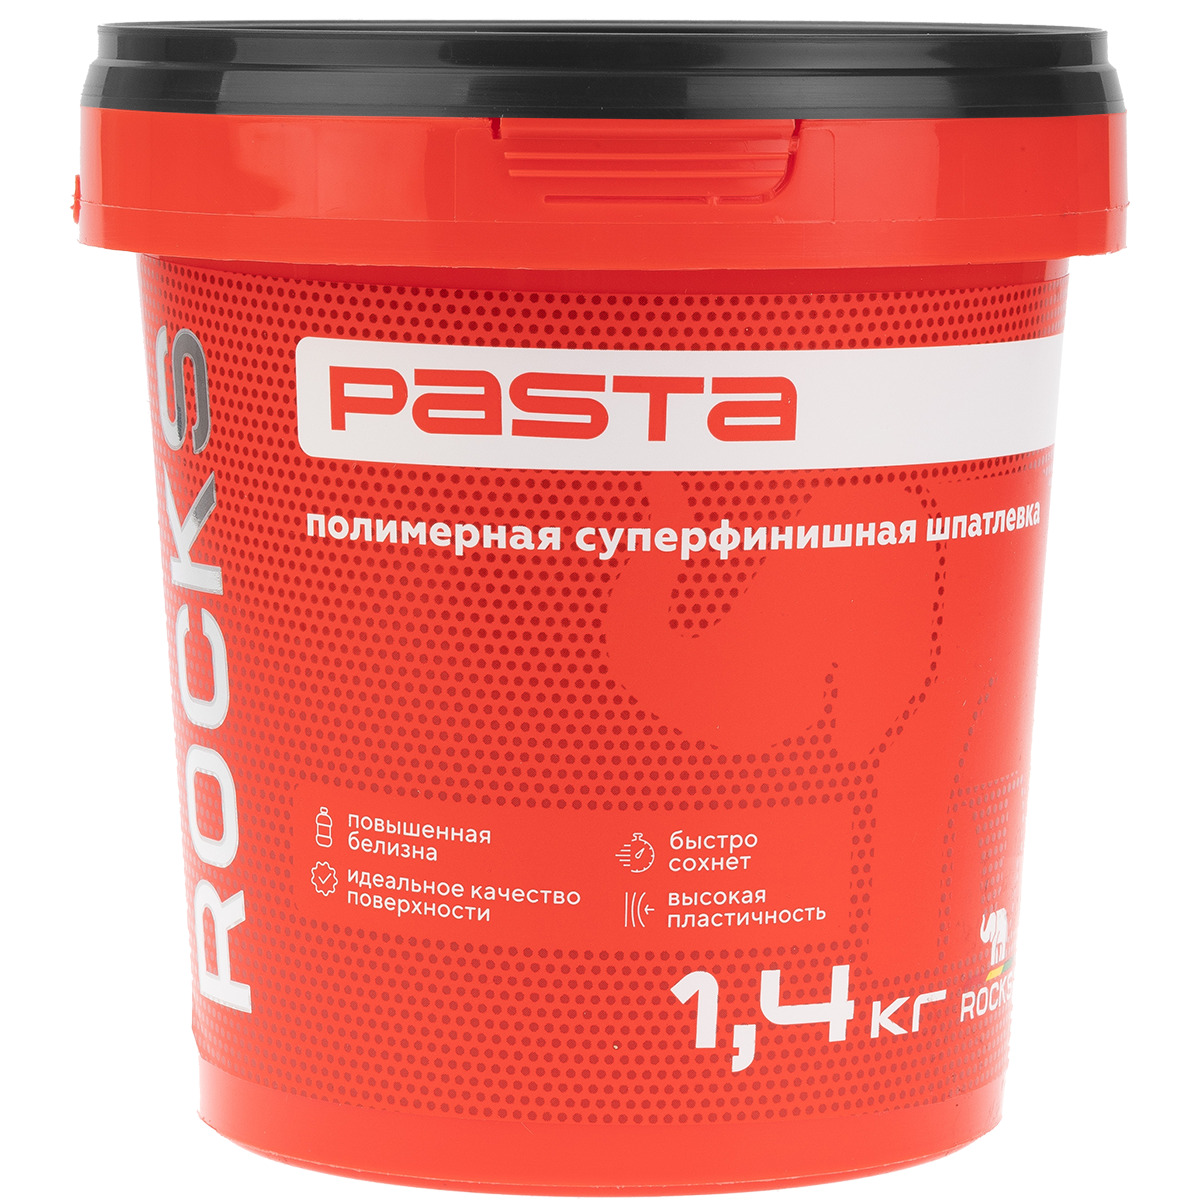 

Шпатлевка полимерная Rocks Pasta суперфинишная трещиностойкая 1,4 кг, Белый